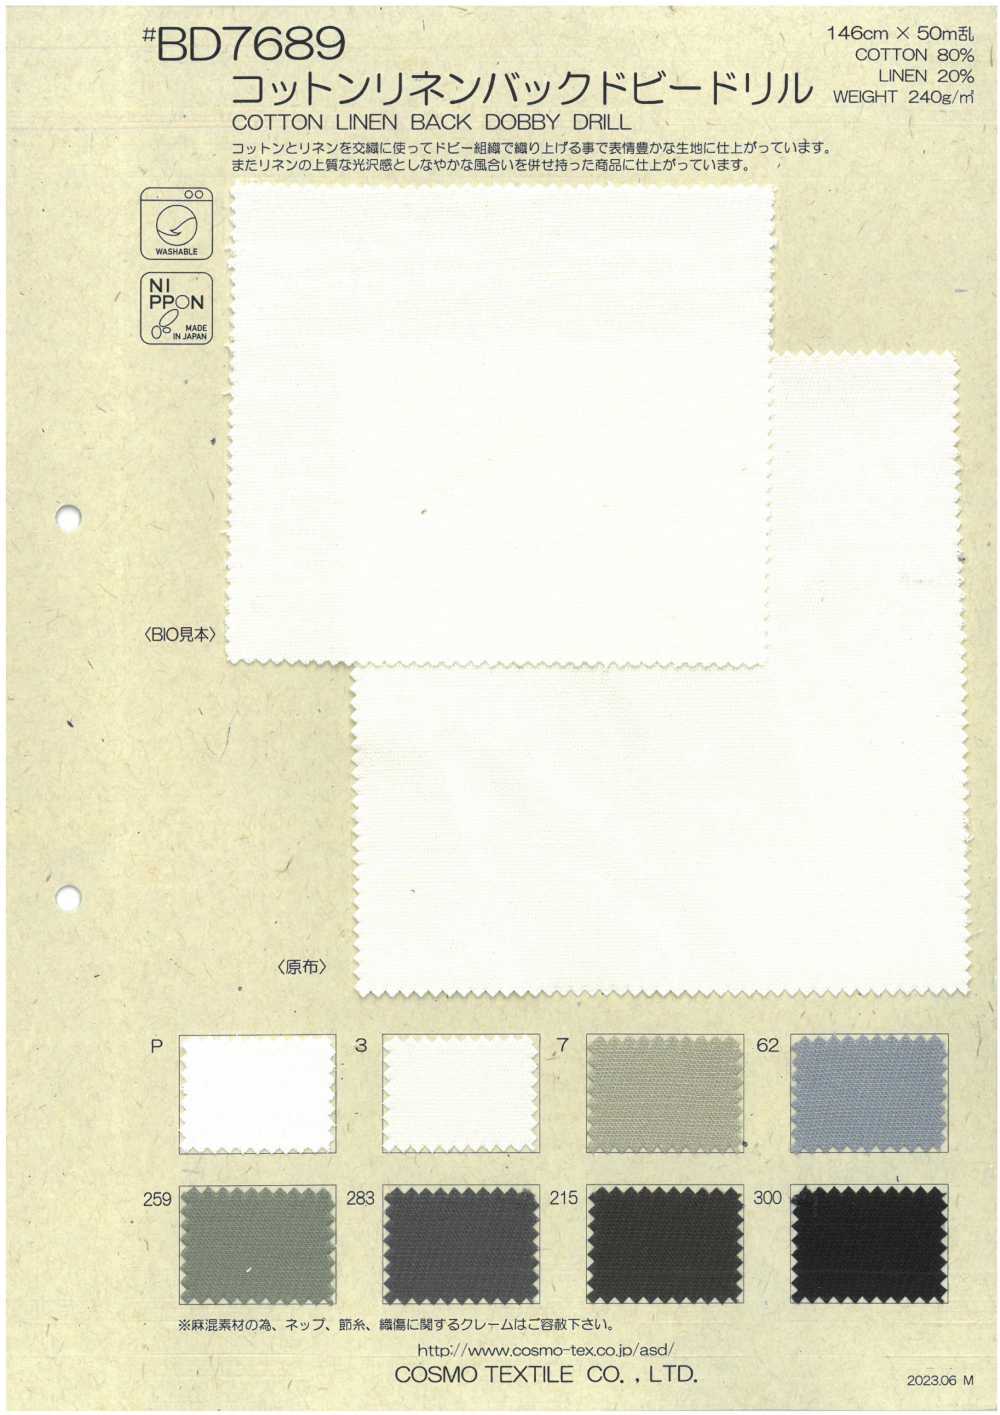 BD7689 Dobby-Drill Mit Baumwoll-Leinen-Rückseite[Textilgewebe] COSMO TEXTILE